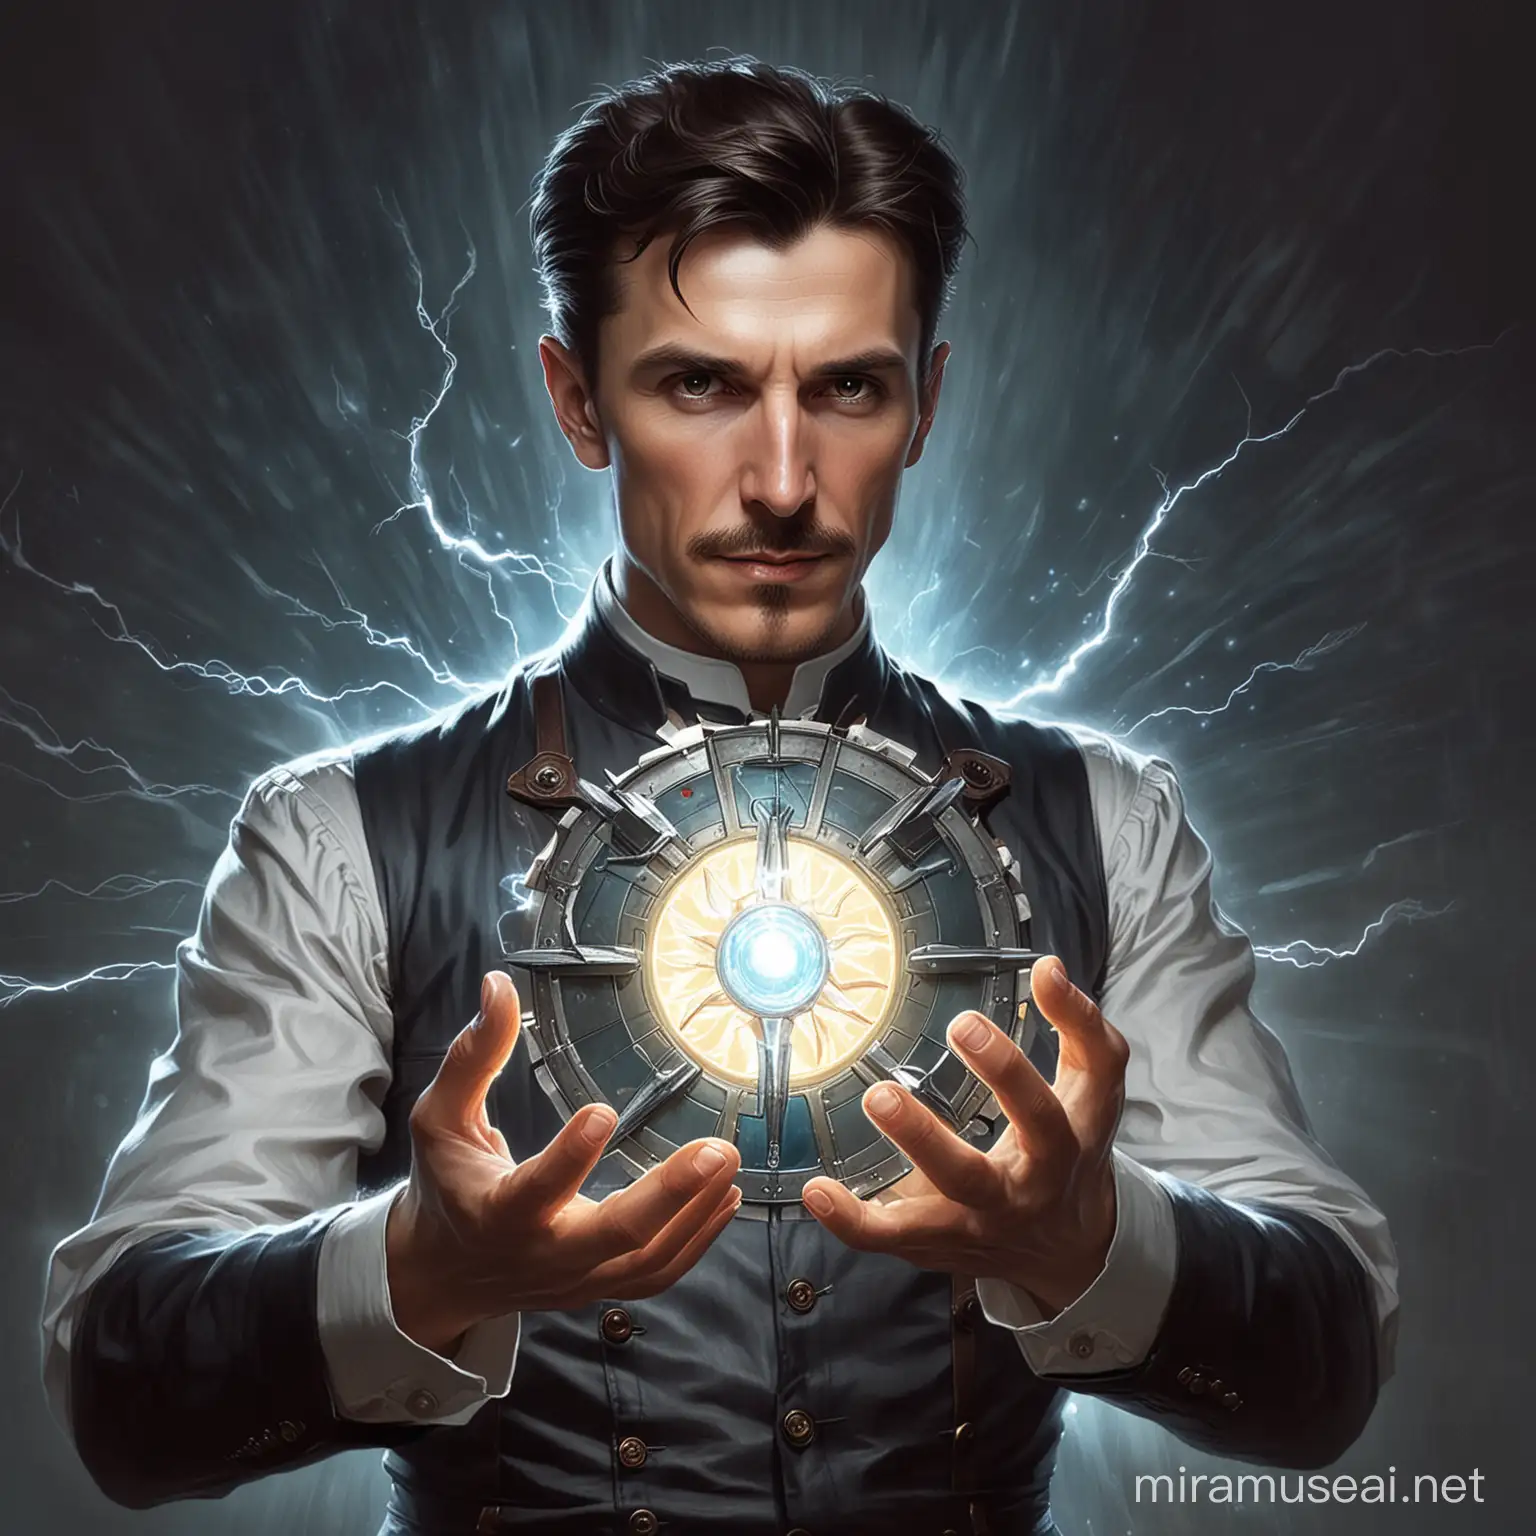 Nikola Tesla Holding Arc Reactor with Lightning in Super Saiyan Pose